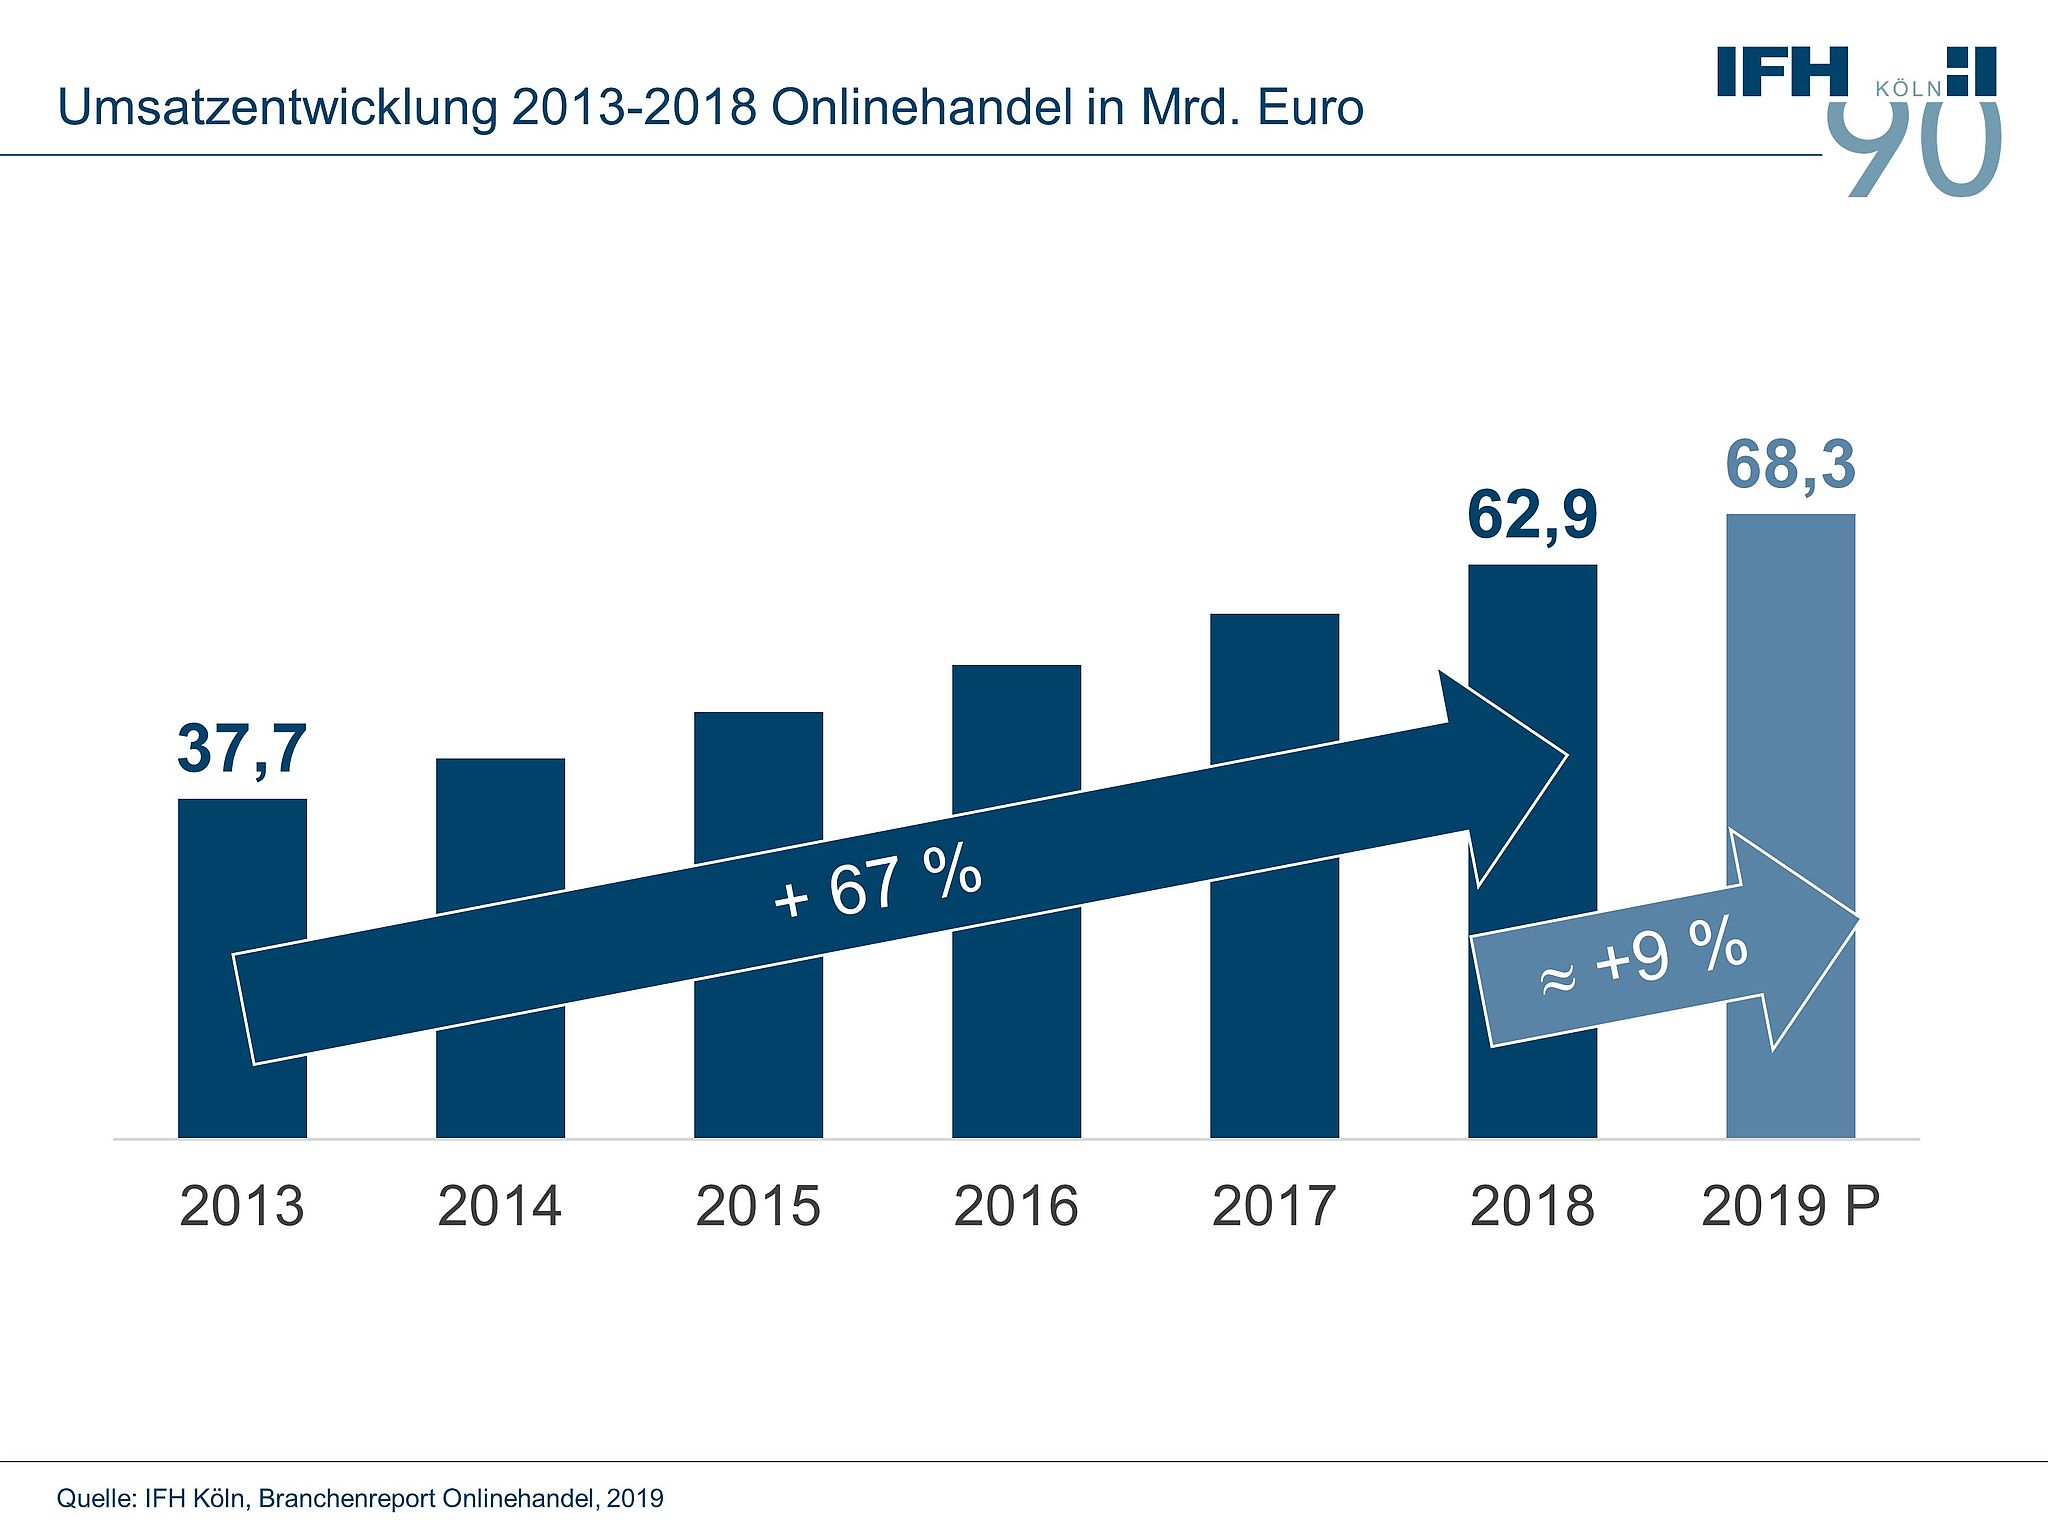 Umsatzentwicklung im Onlinehandel von 2013 bis 2018 in Euro